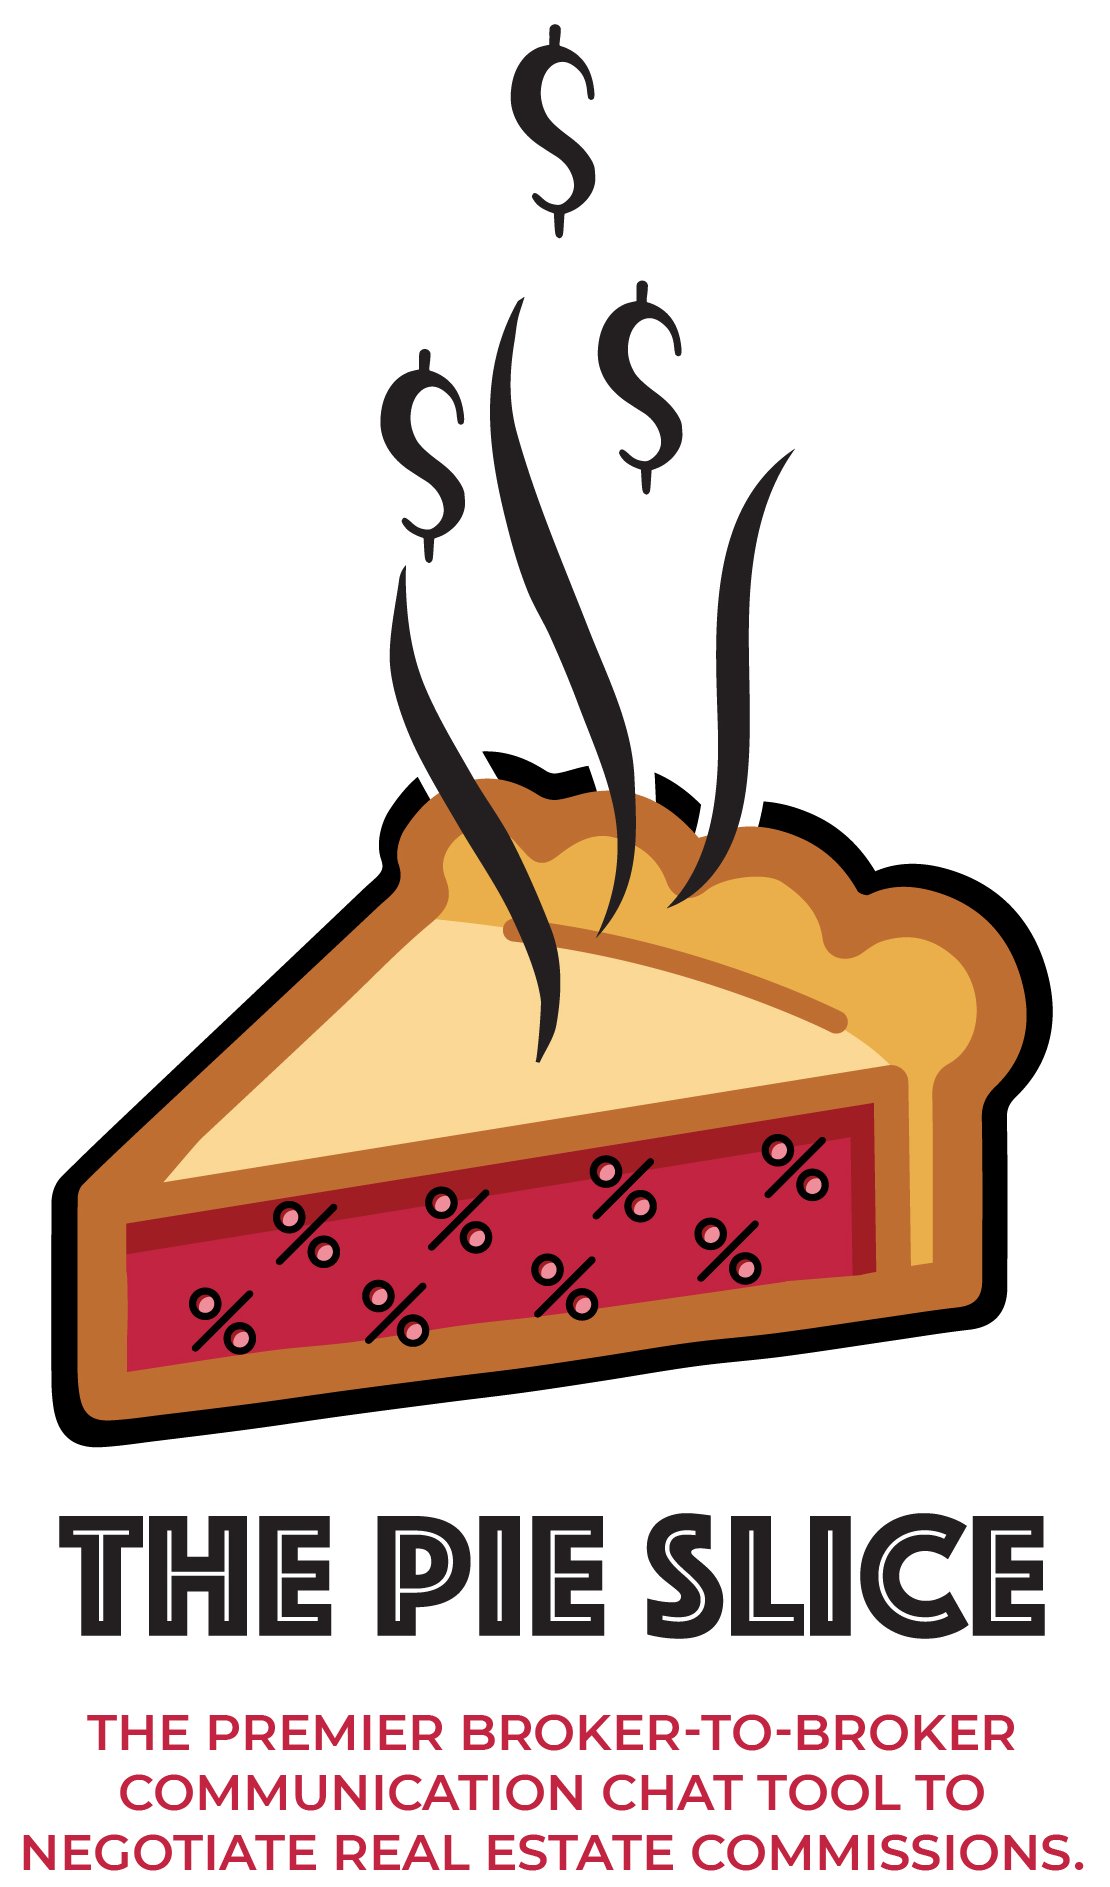 The Pie Slice logo